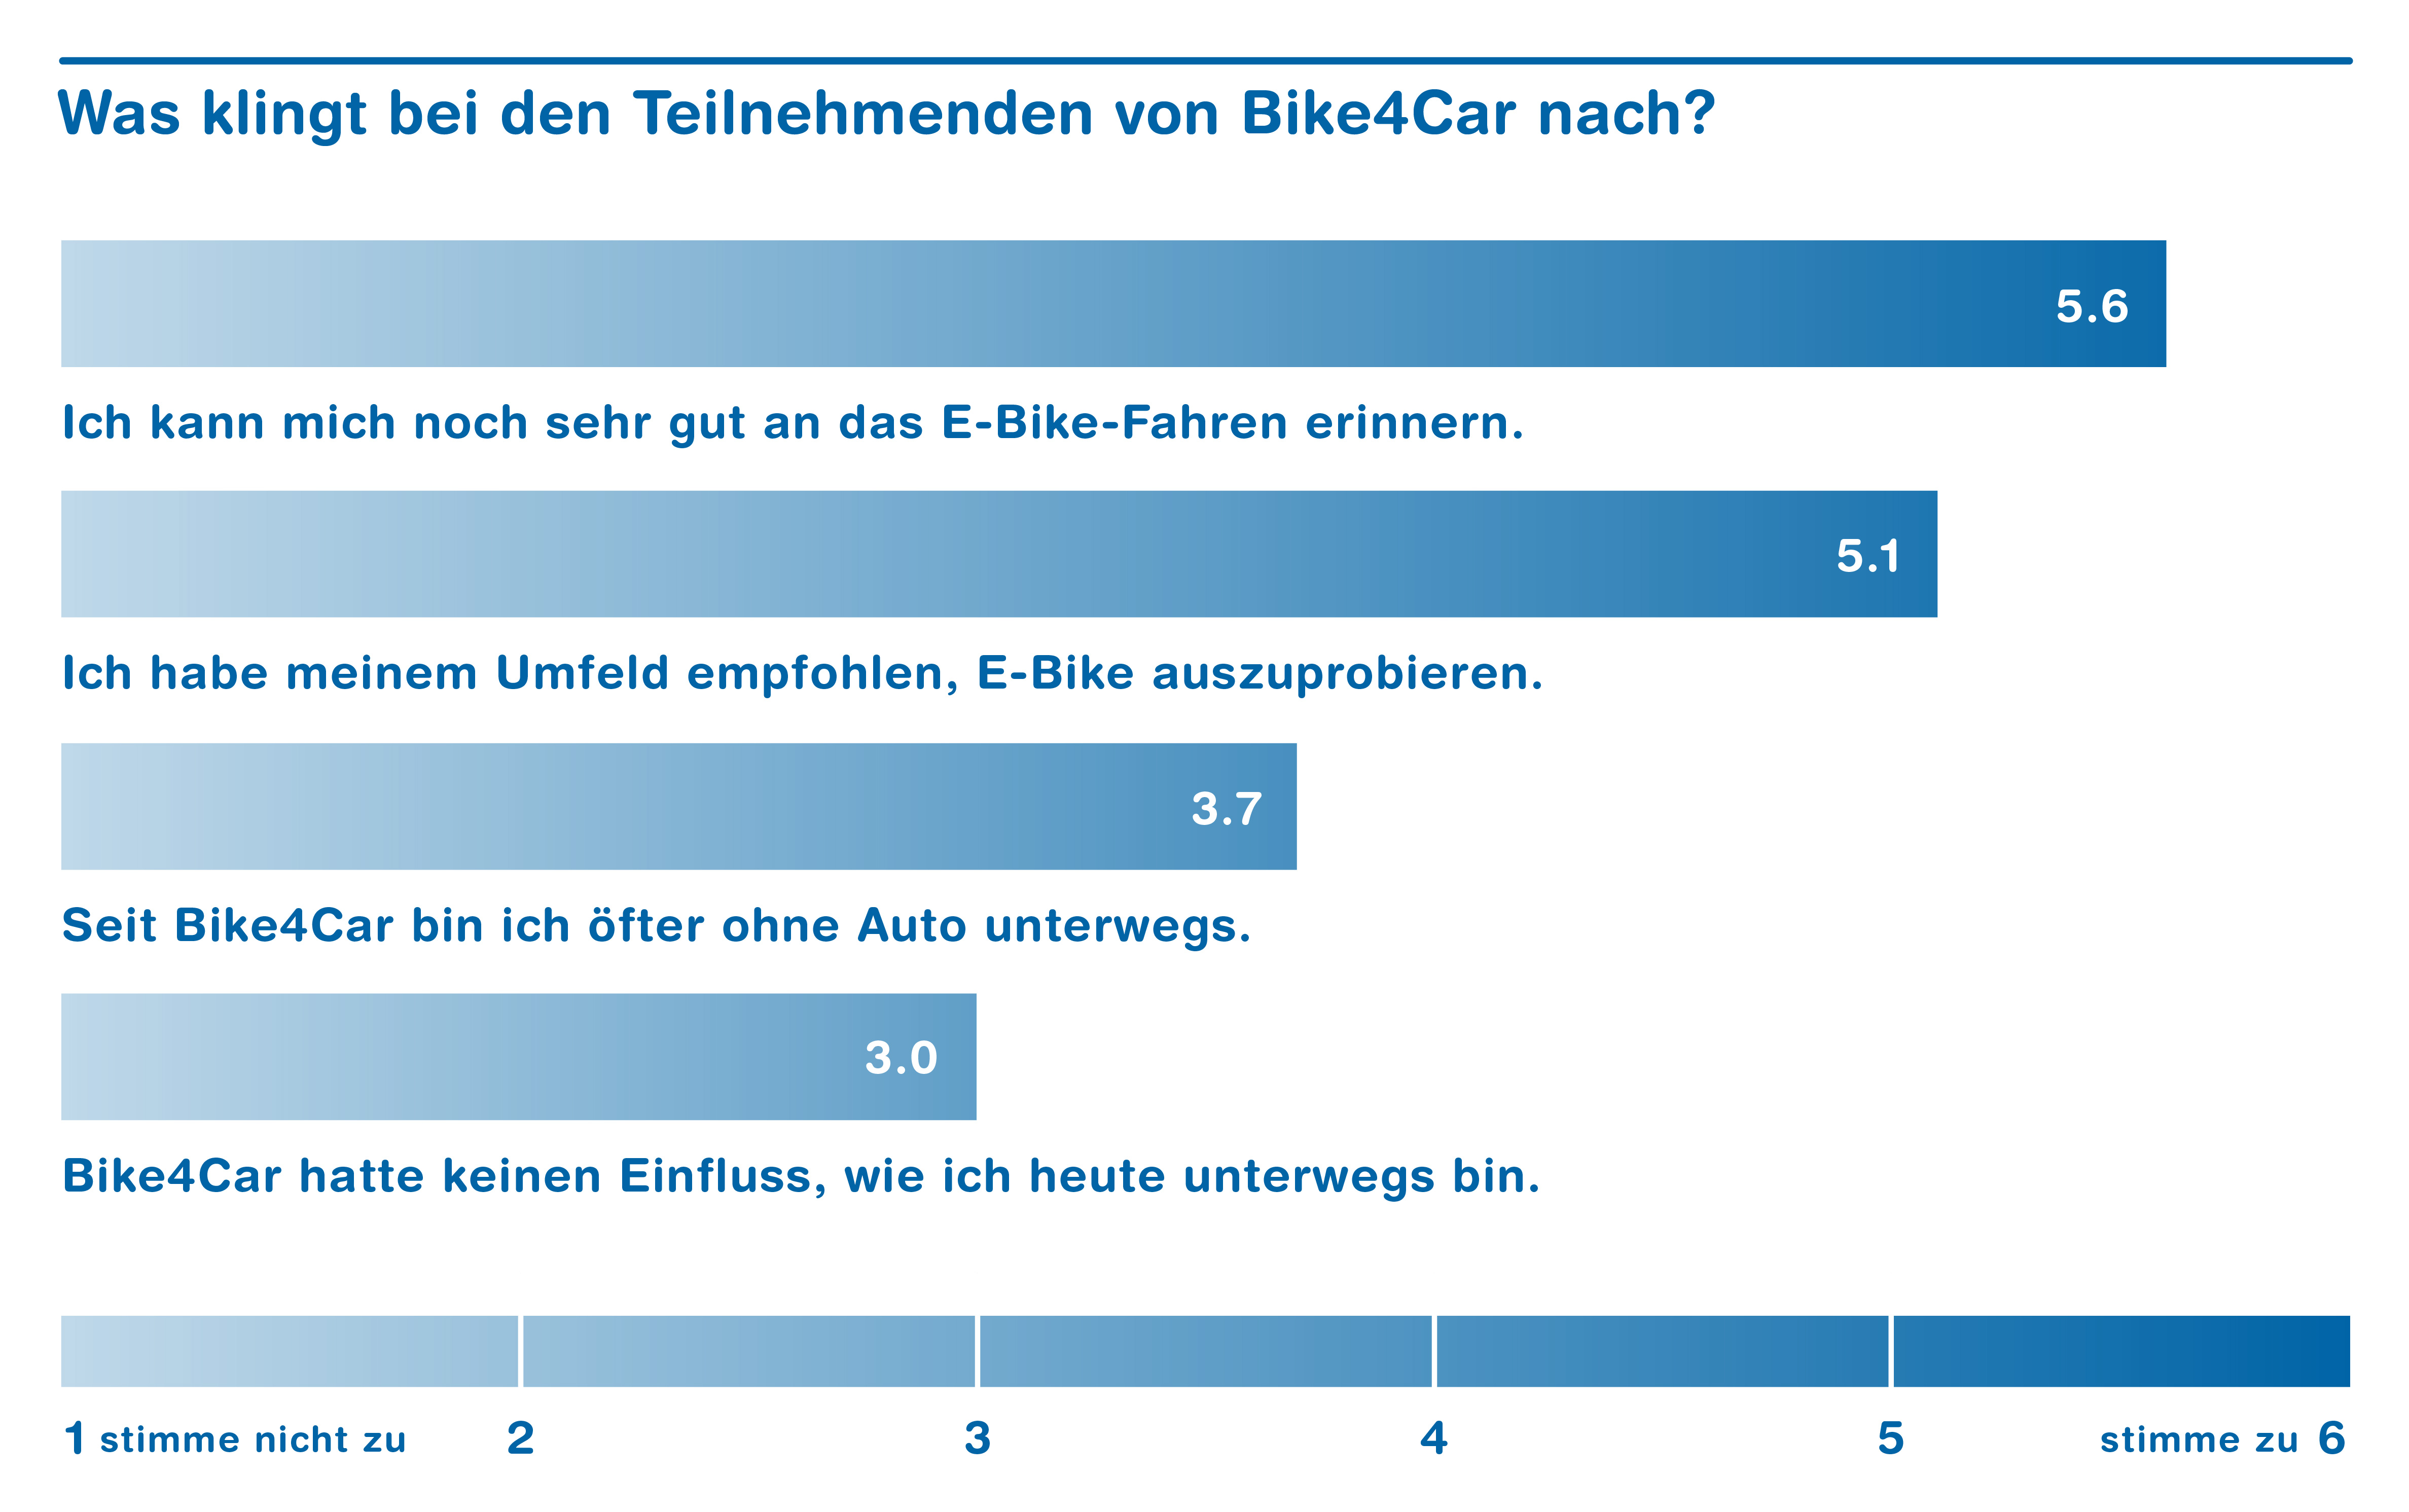 Grafik: die meisten können sich noch sehr gut an das E-Bike-Fahren erinnern